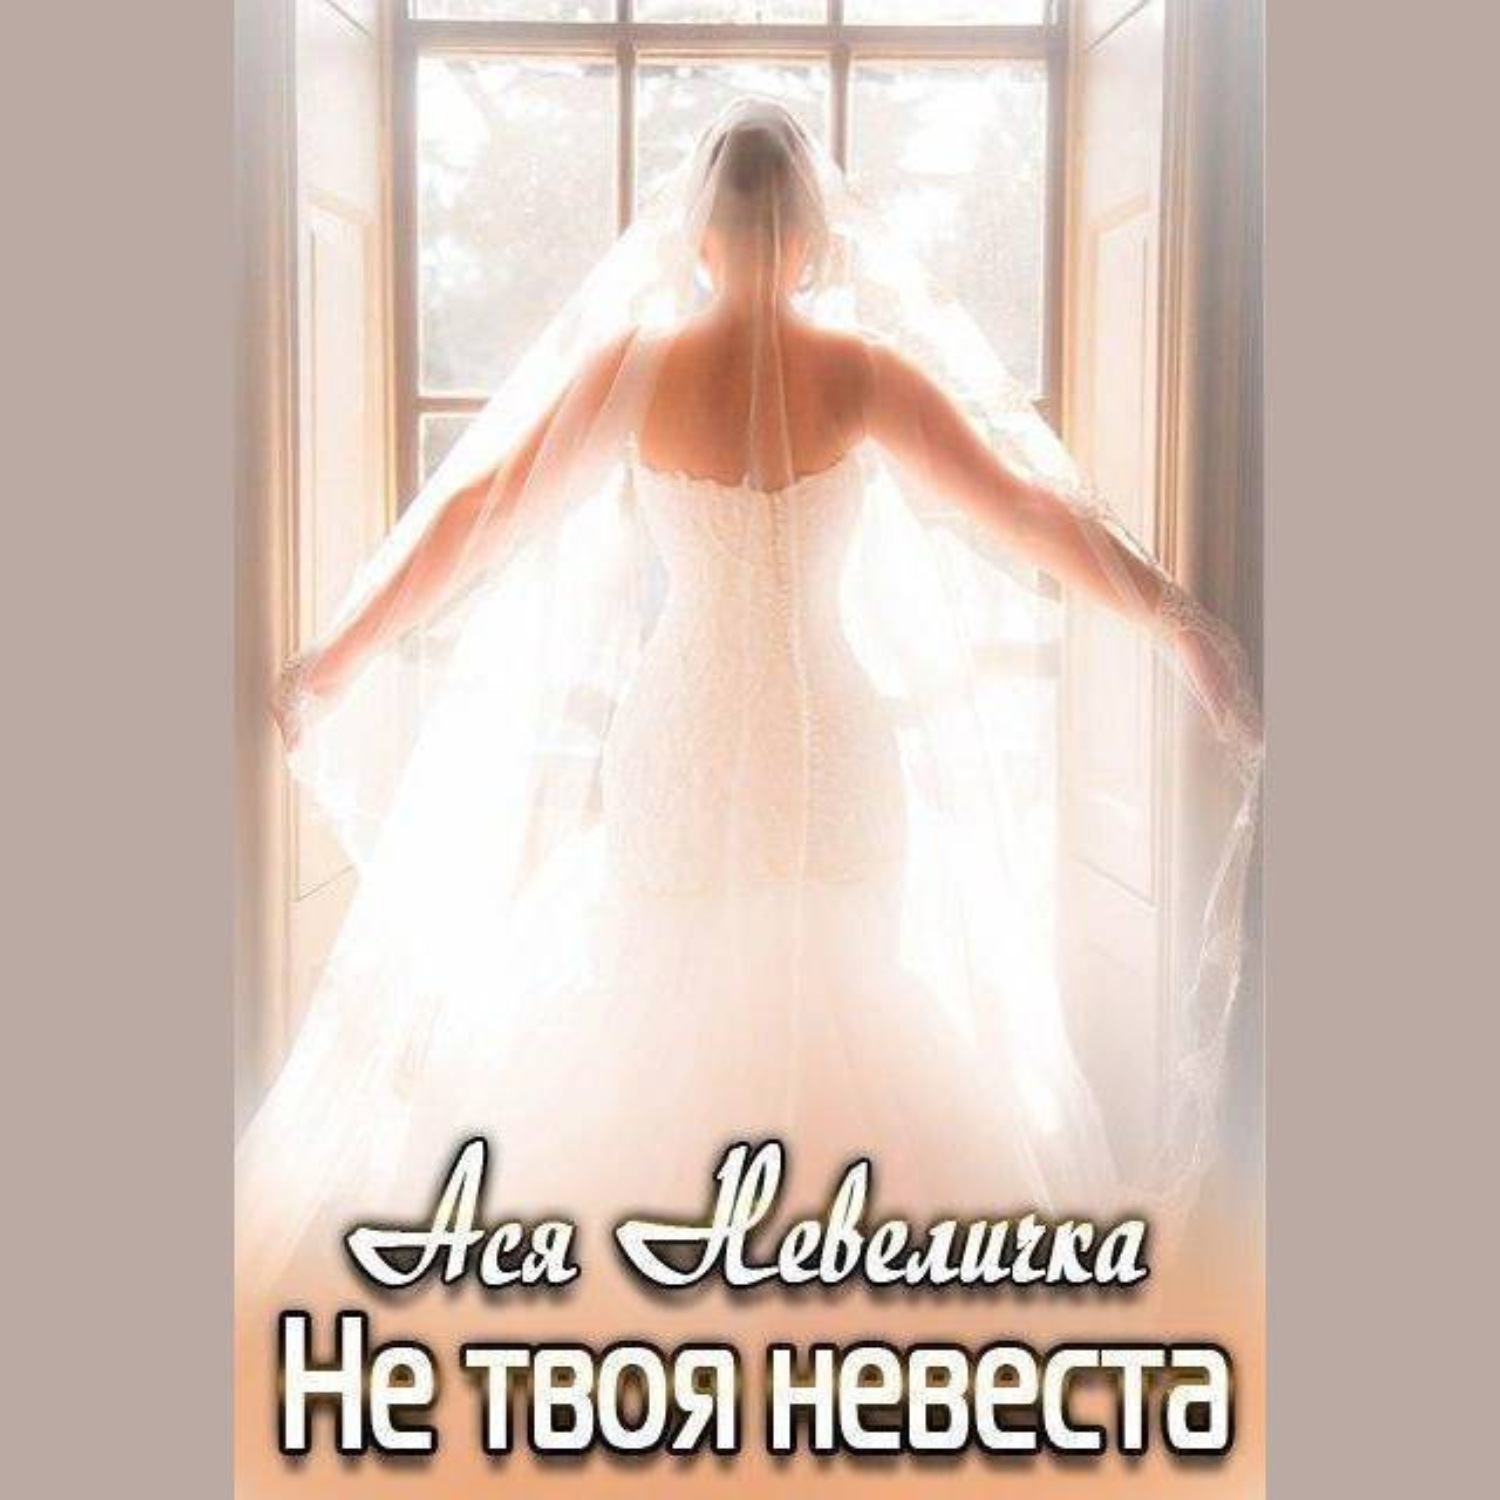 Стала твоей невестой. Твоя невеста имя. Невеста Чехов аудиокнига. Слава , твоя невеста на следующий день .. Как найти невесту.